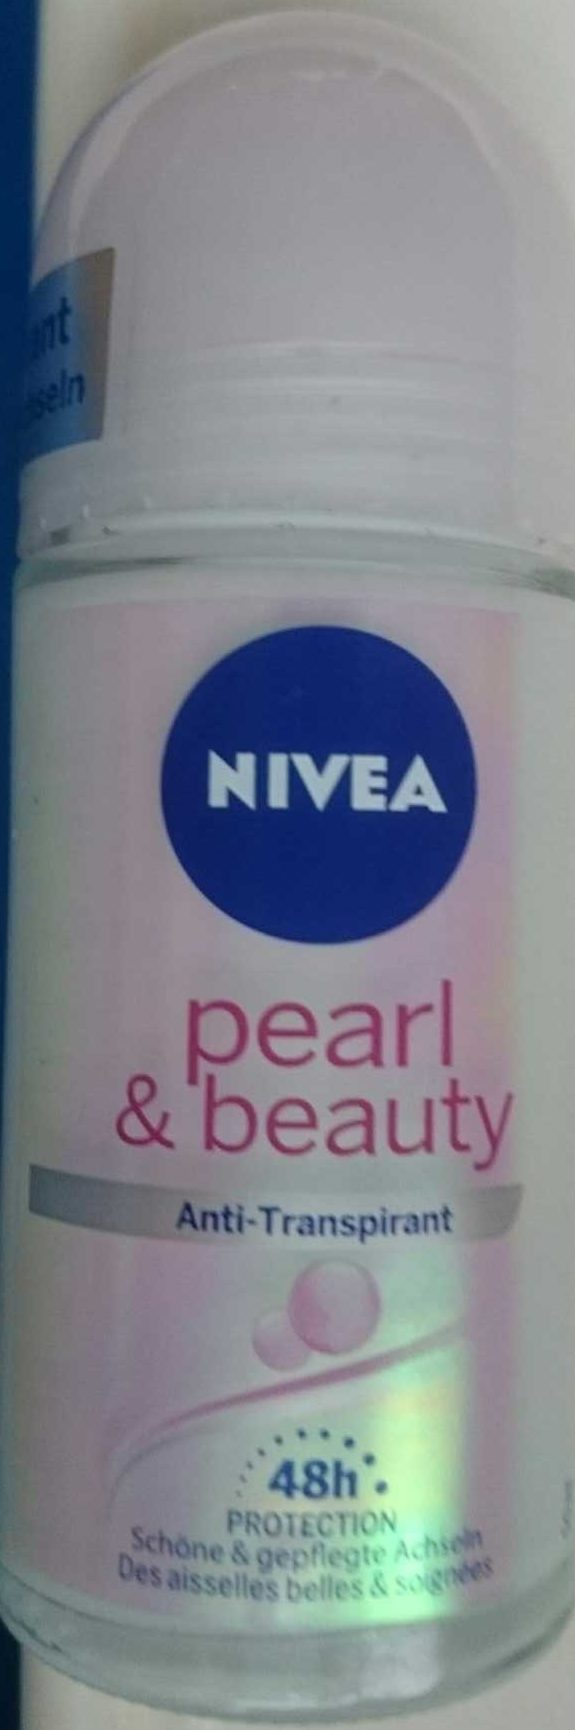 Deo pearl & beauty - Produkt - de